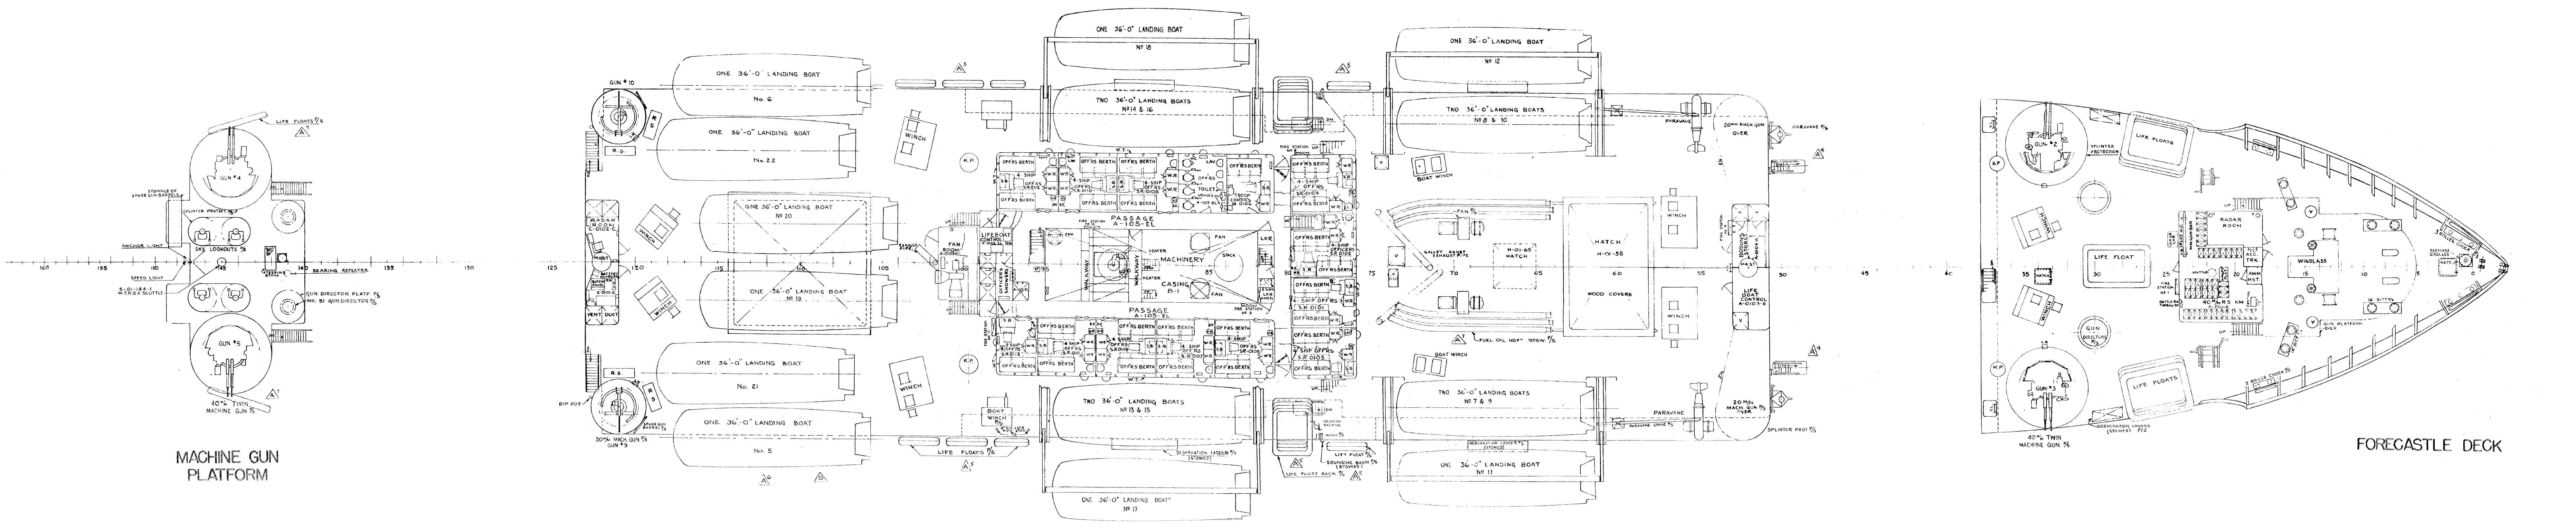 Gun deck blueprint for the Haskell-class attack transport